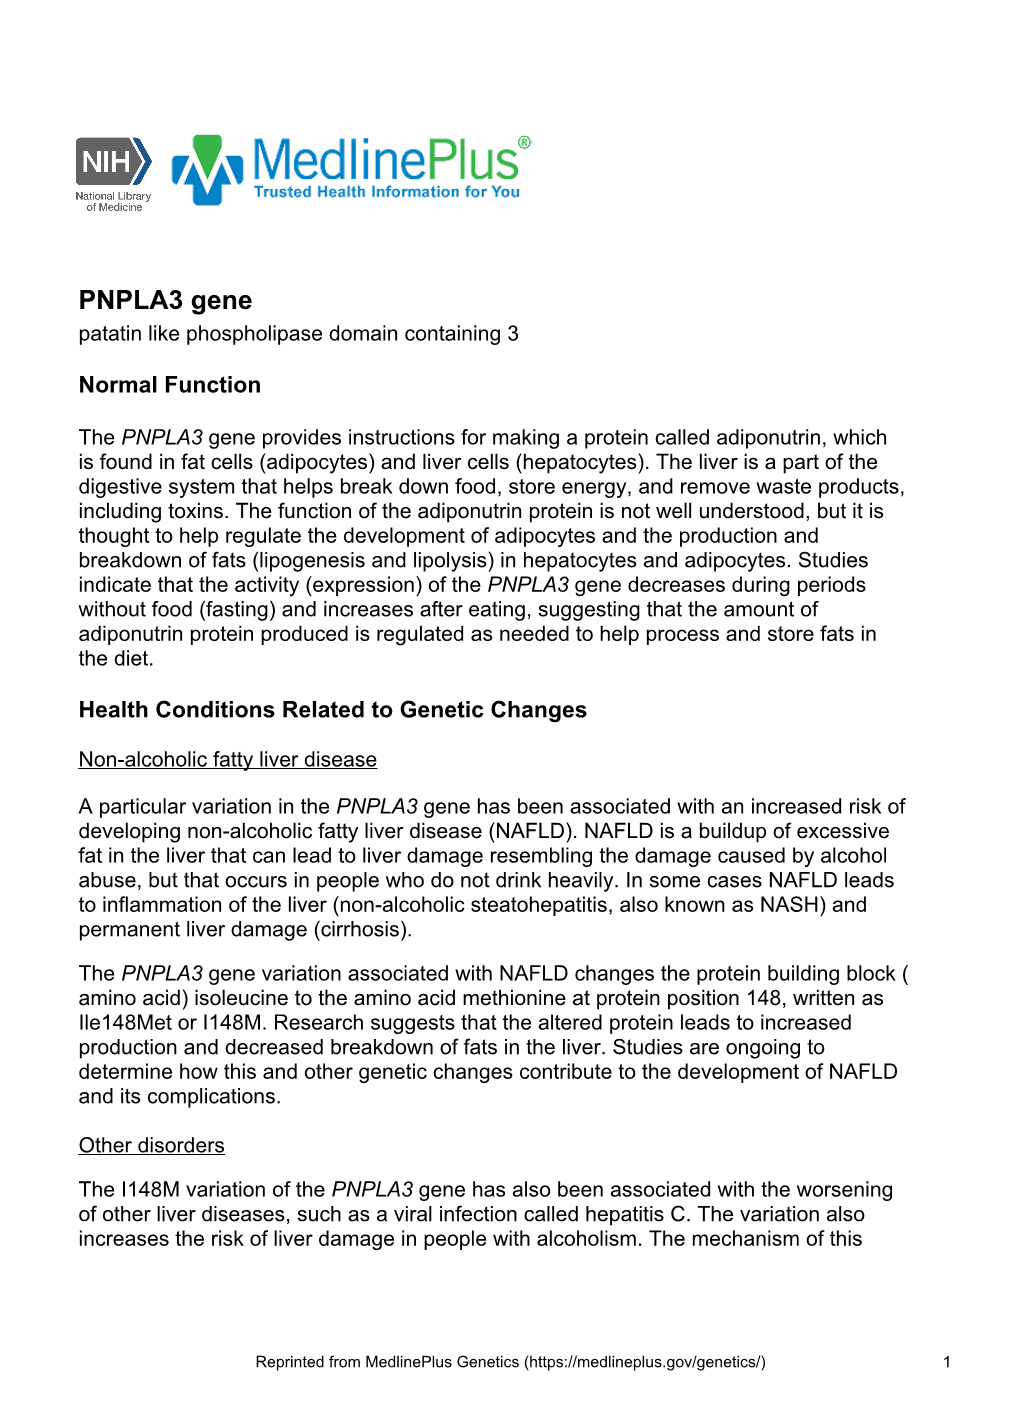 PNPLA3 Gene Patatin Like Phospholipase Domain Containing 3